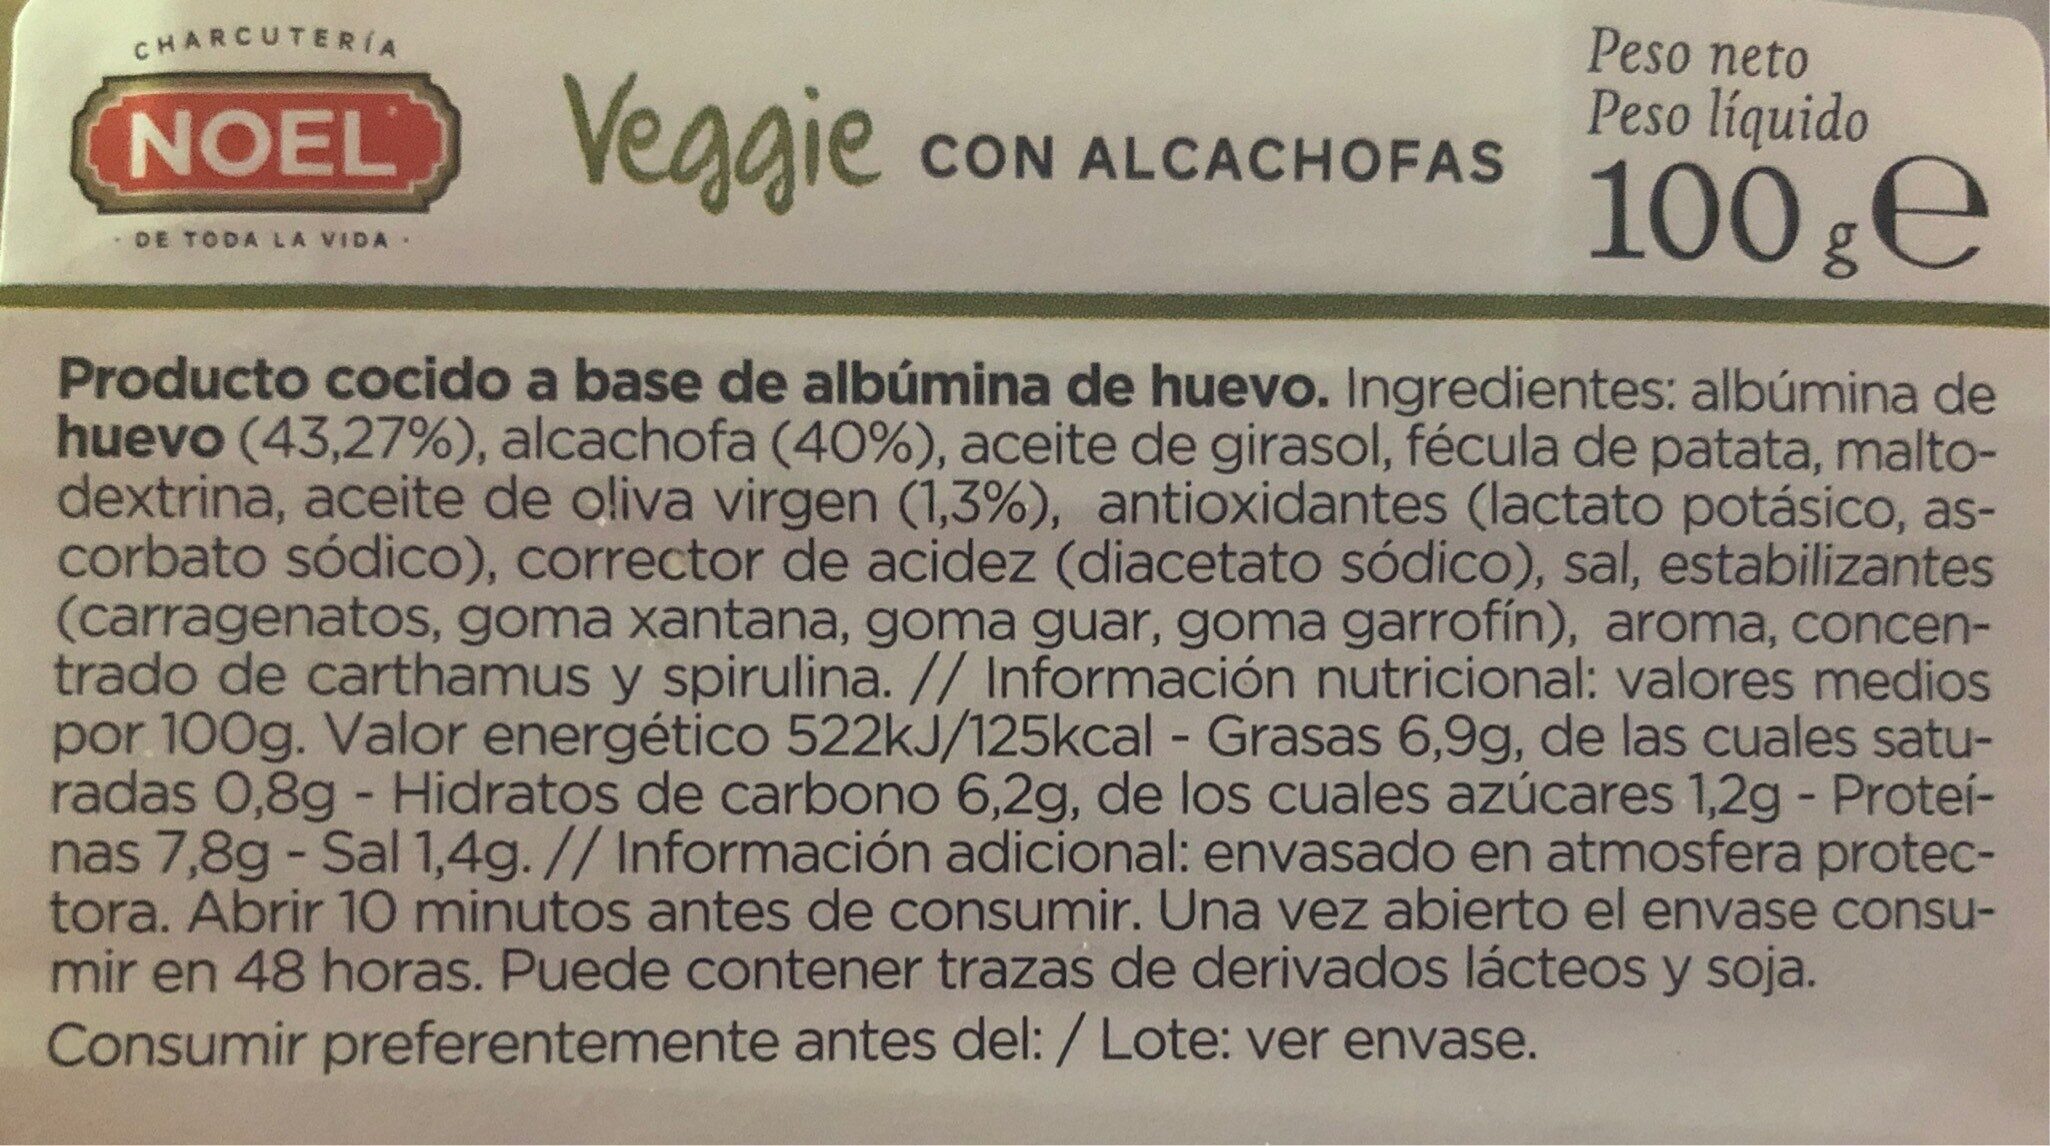 Veggie con alcachofas - Información nutricional